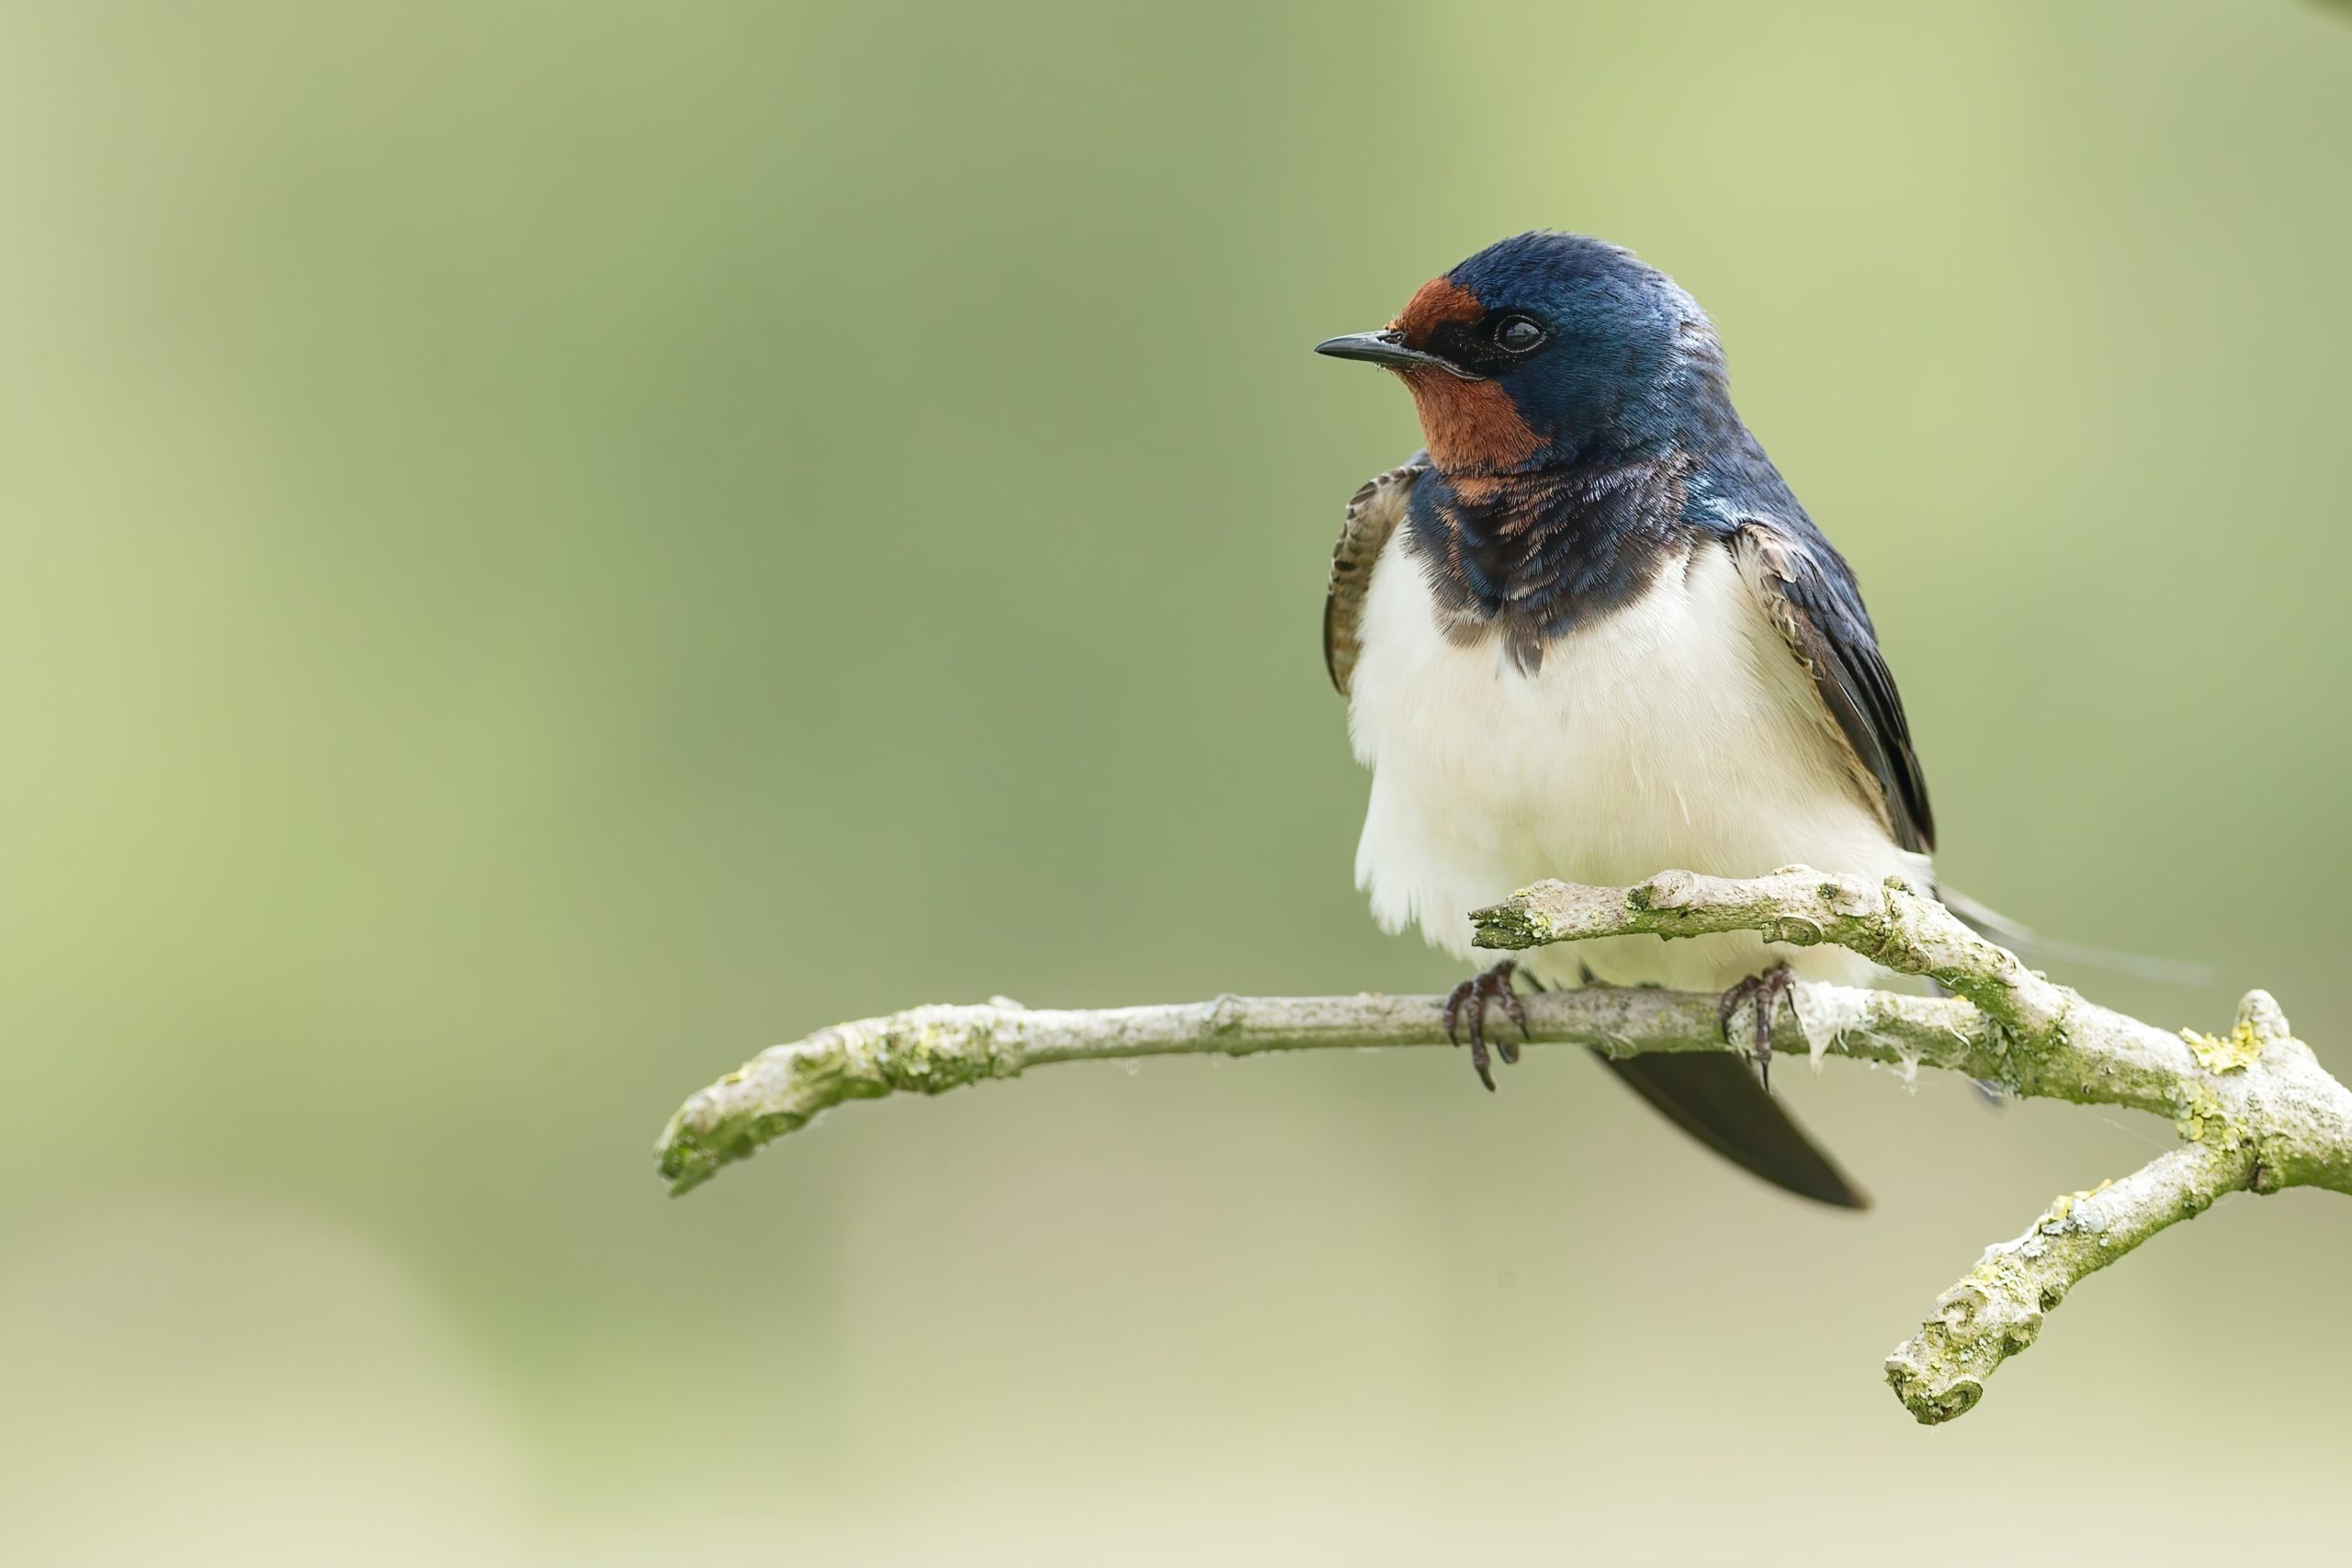 Les sciences participatives à l'honneur dans le nouvel article du bird-blog d'une histoire de plumes